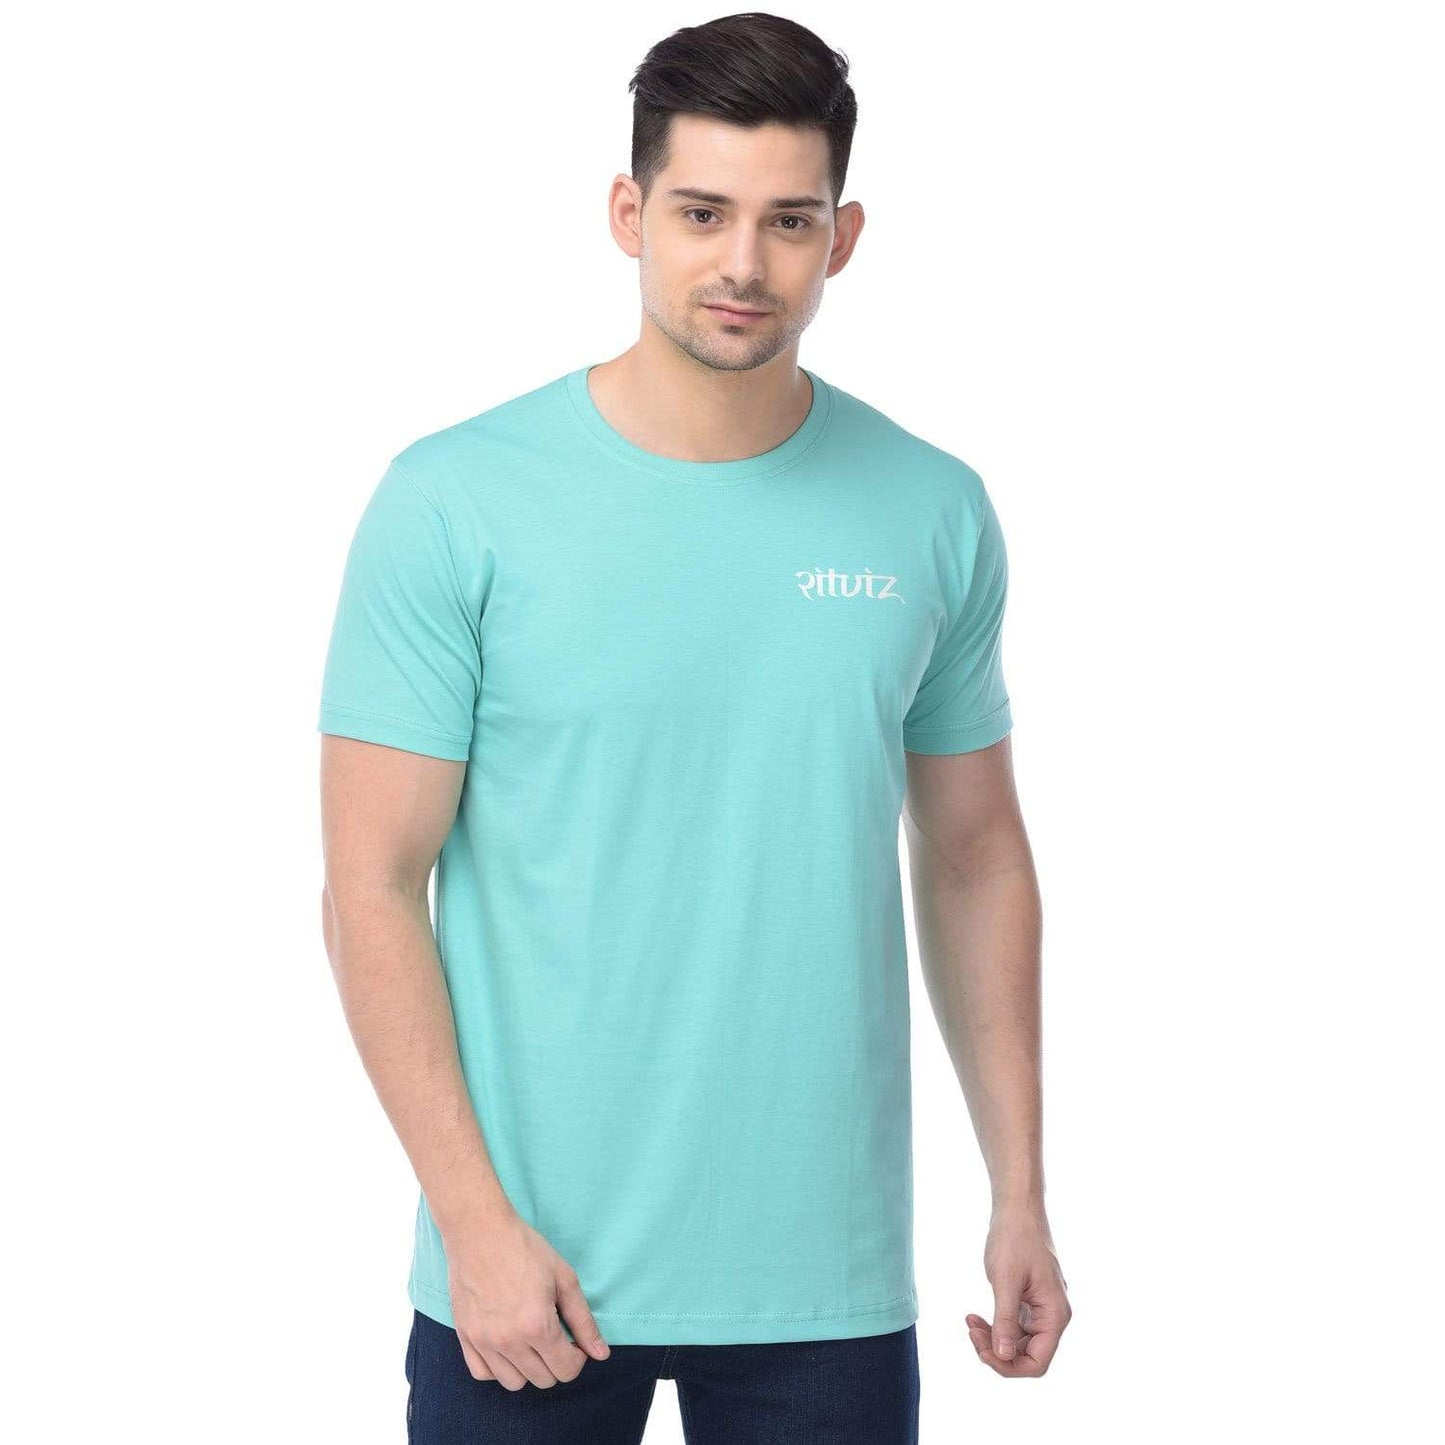 Ritviz - Liggi Unisex T-Shirt